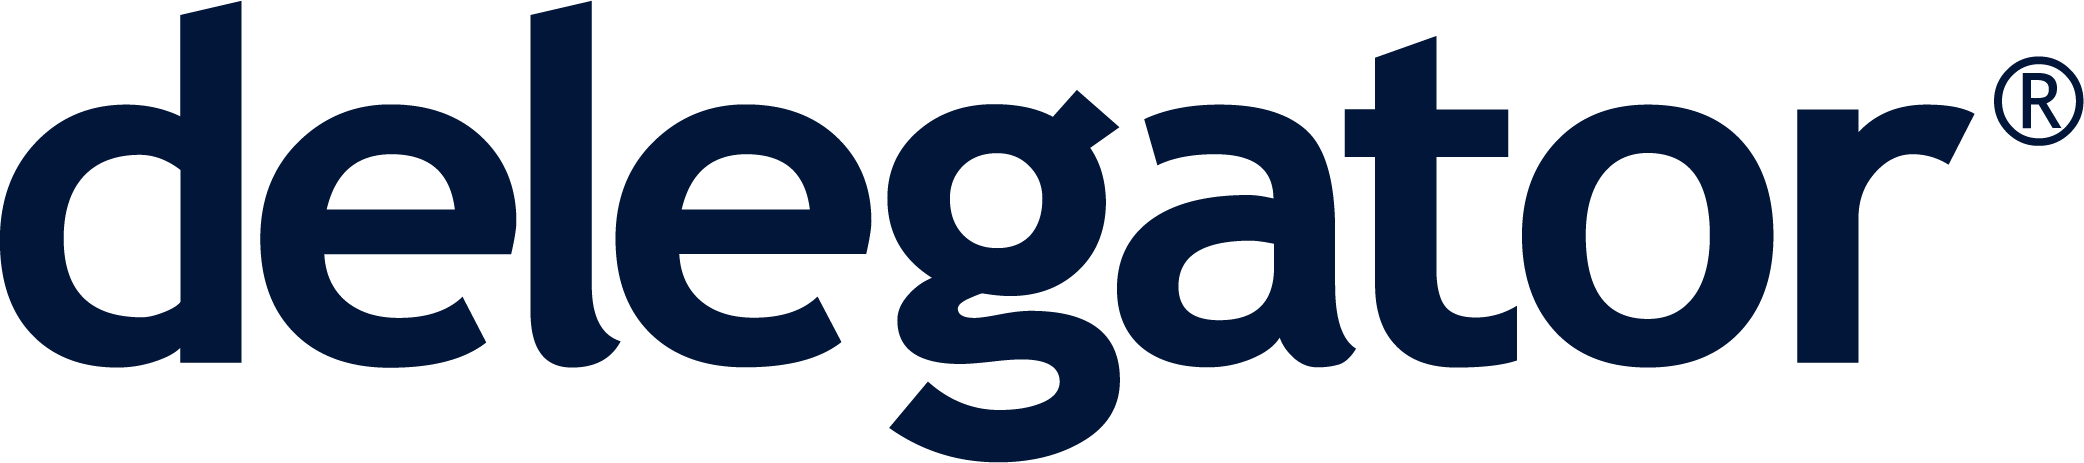 delegator-logo